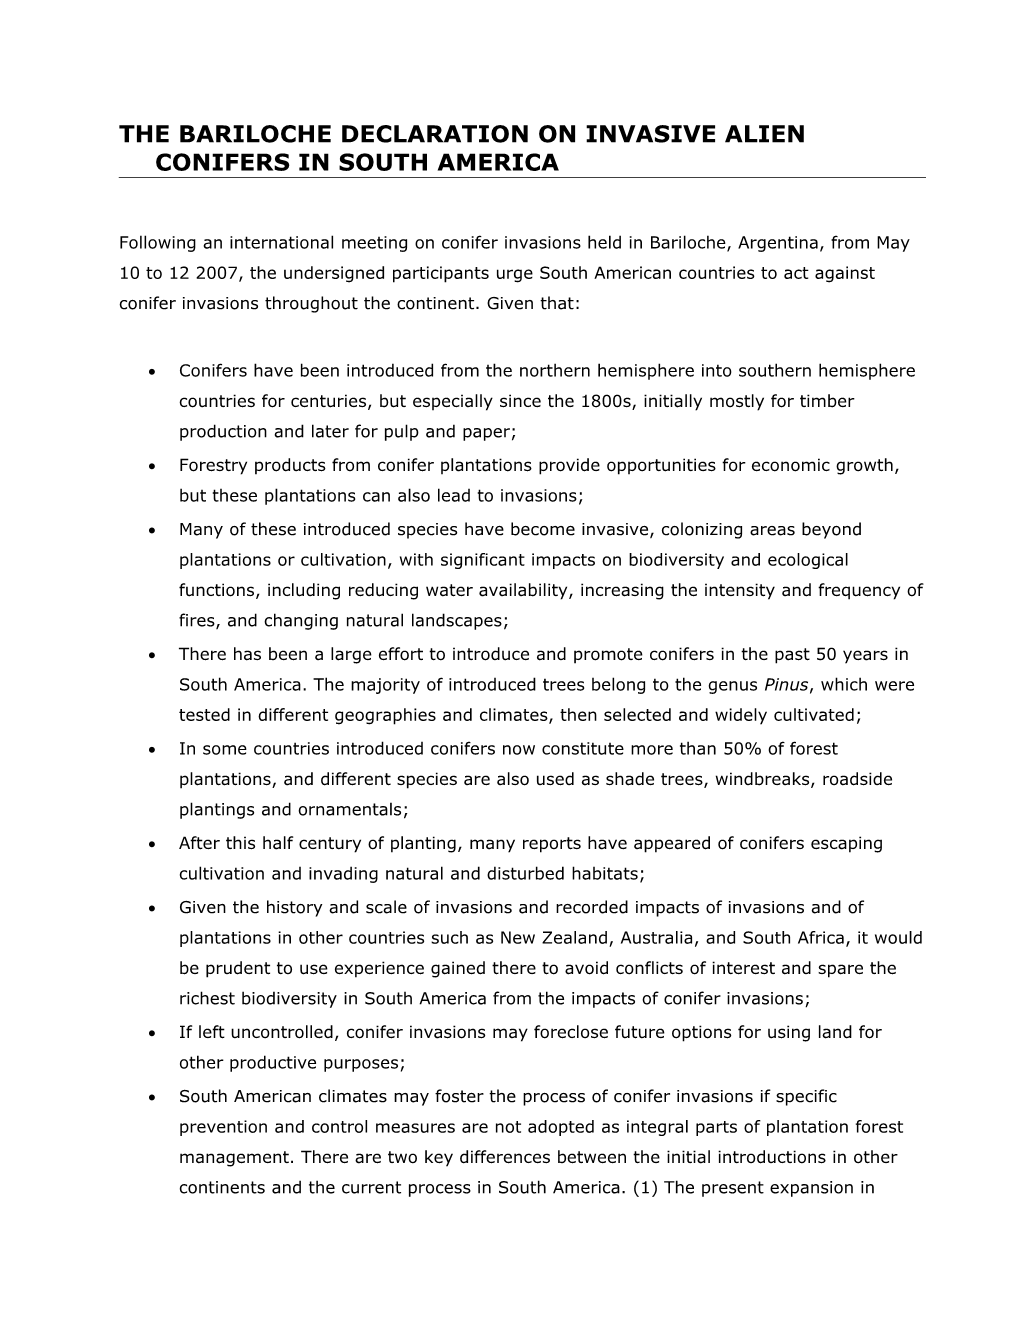 THE BARILOCHE DECLARATION on Invasive Alien Conifers in South America